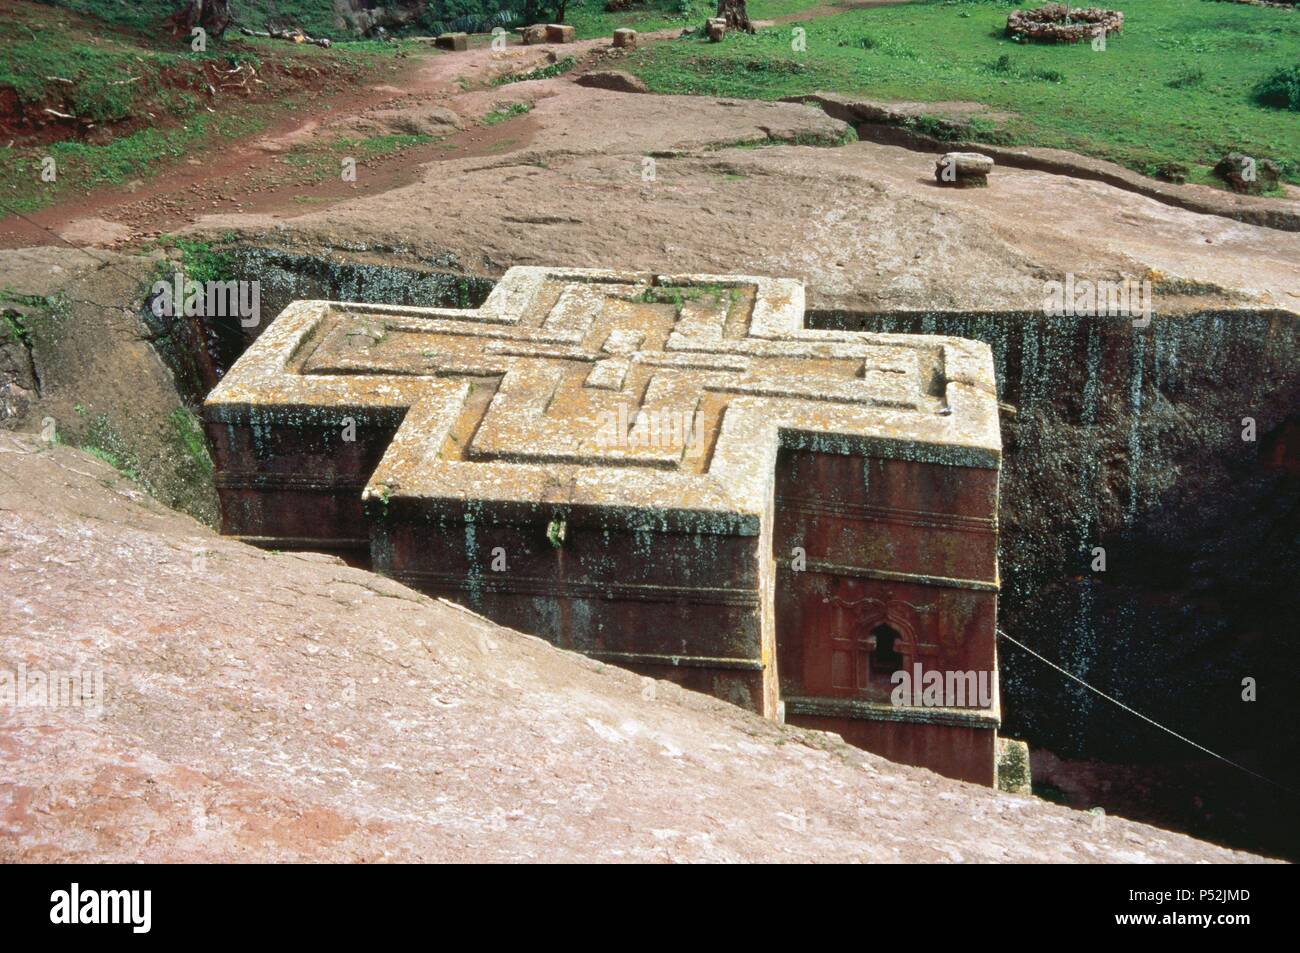 ARTE MEDIEVAL. ETIOPIA. CONJUNTO MONUMENTAL DE LALIBELA. Con unas cincuenta iglesias monolitas excavadas en la roca, fueron construidas durante el reinado del Emperador LALIBELA (1182-1220) con ayuda de cristianos coptos que huían del islam. Vista de la 'BET GIORGIS' (IGLESIA DE SAN JORGE) (s. XI-XIII), con planta cruciforme. Distrito de Lasta. ETIOPIA. Stock Photo